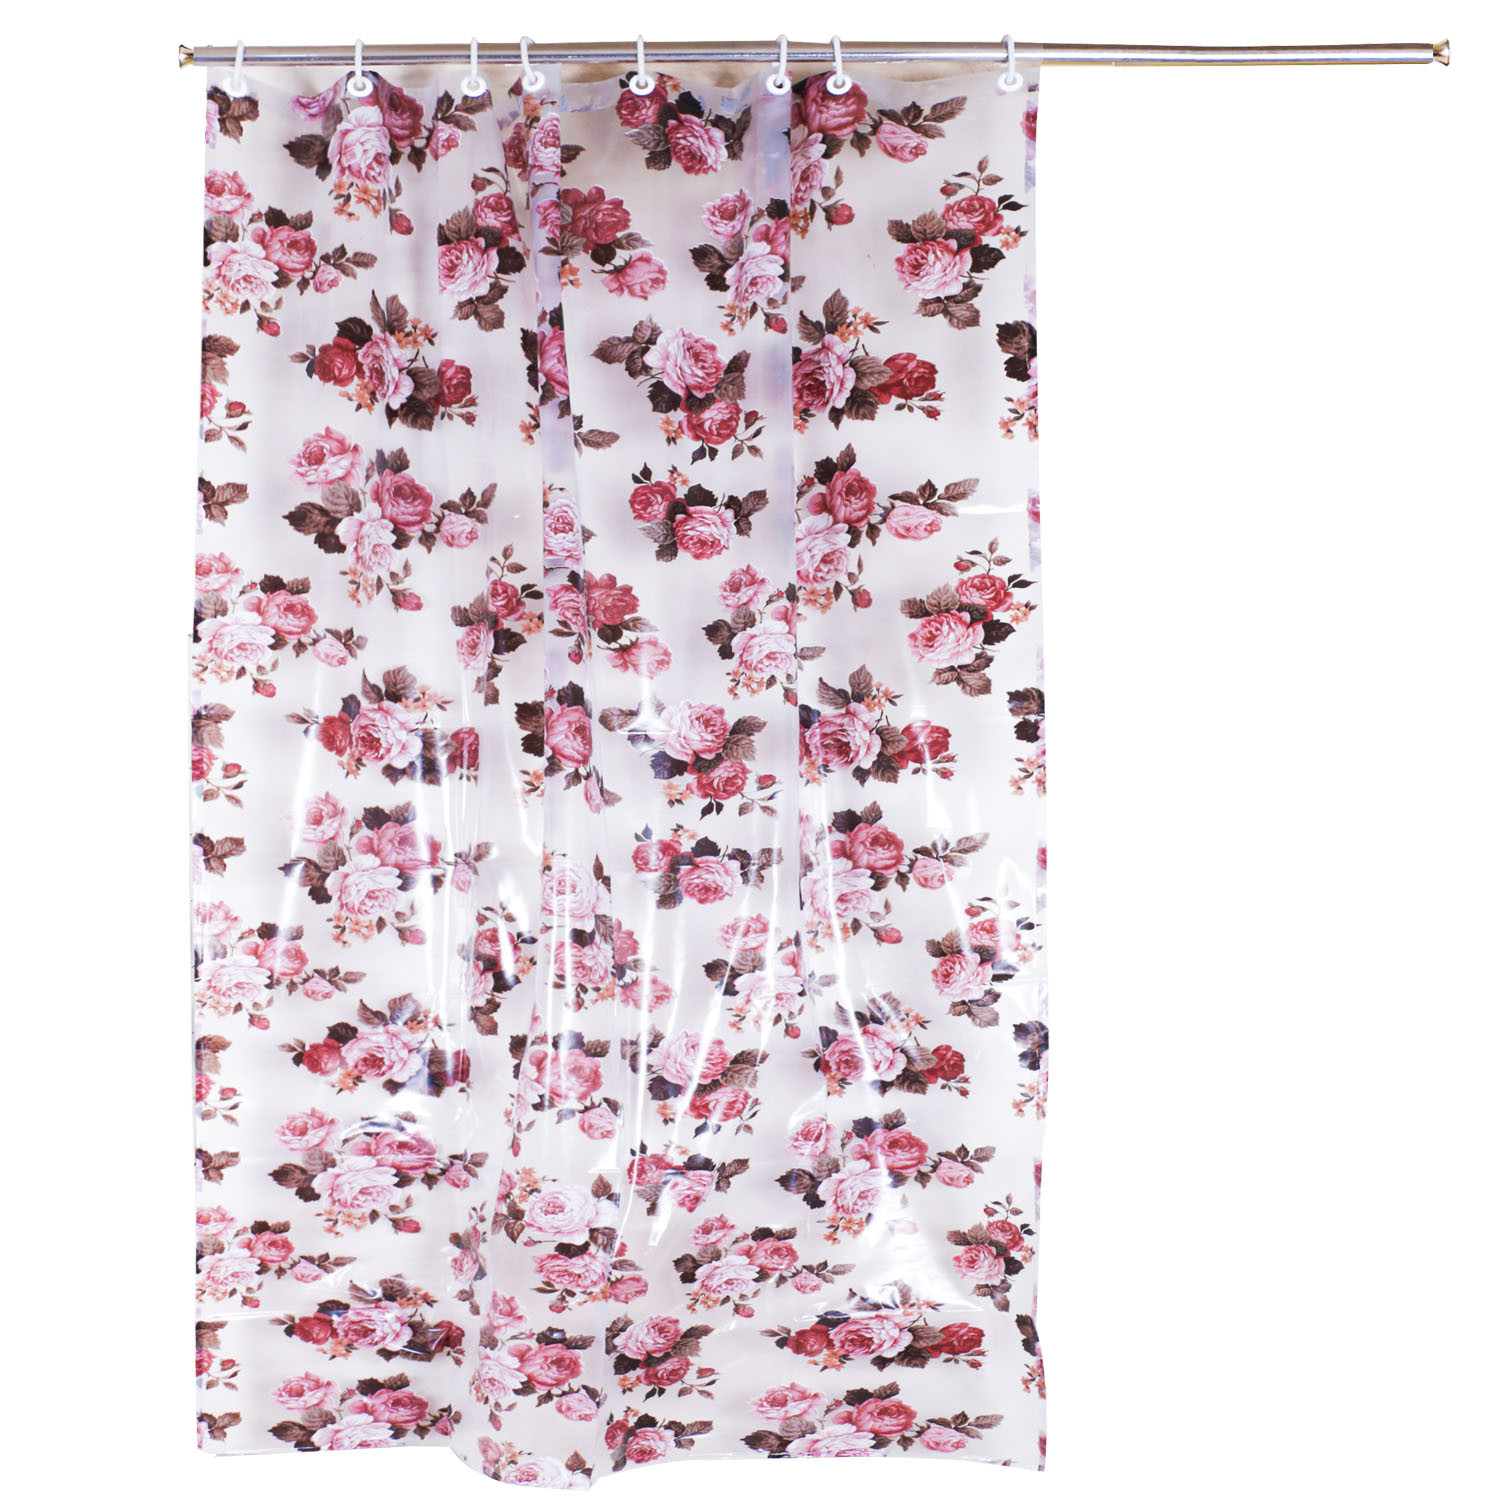 Kuber Industries PVC Waterproof Flower Print Shower Curtain For Bathroom With 8 Rings,7 Feet (Brown)